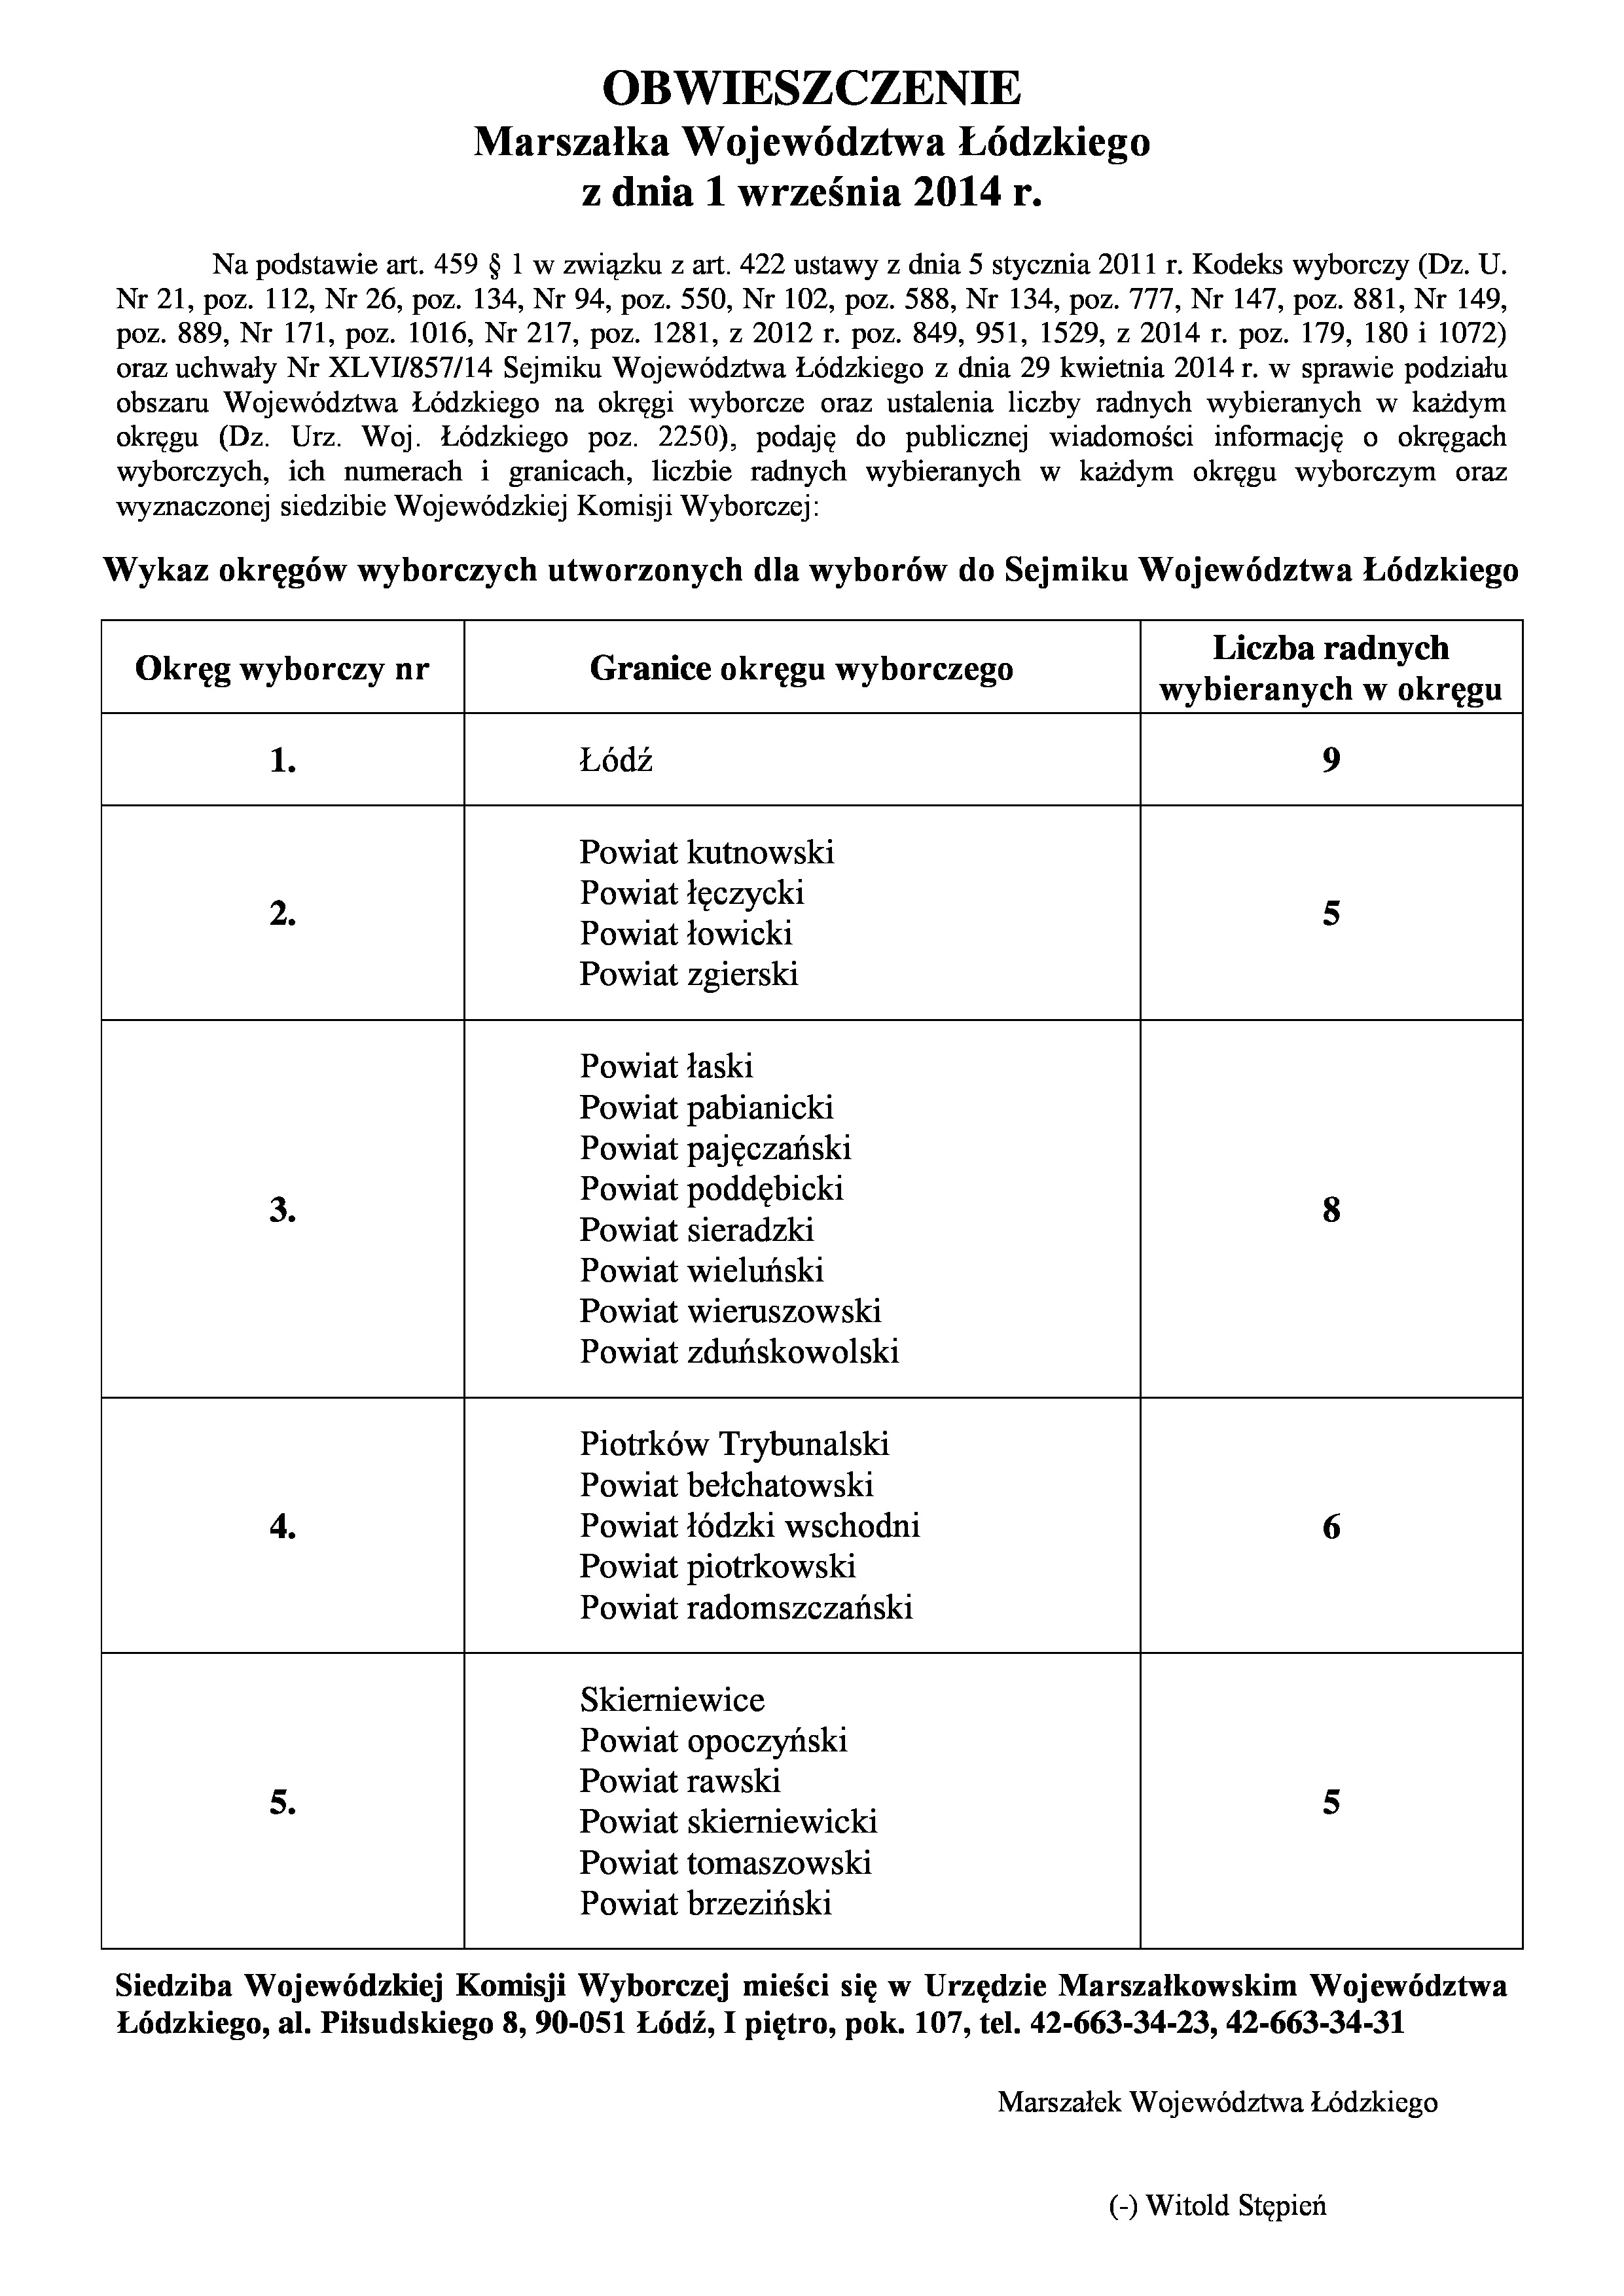 ---------- Obwieszczenie Marszałka o okręgach 2014-1-page-0.jpg